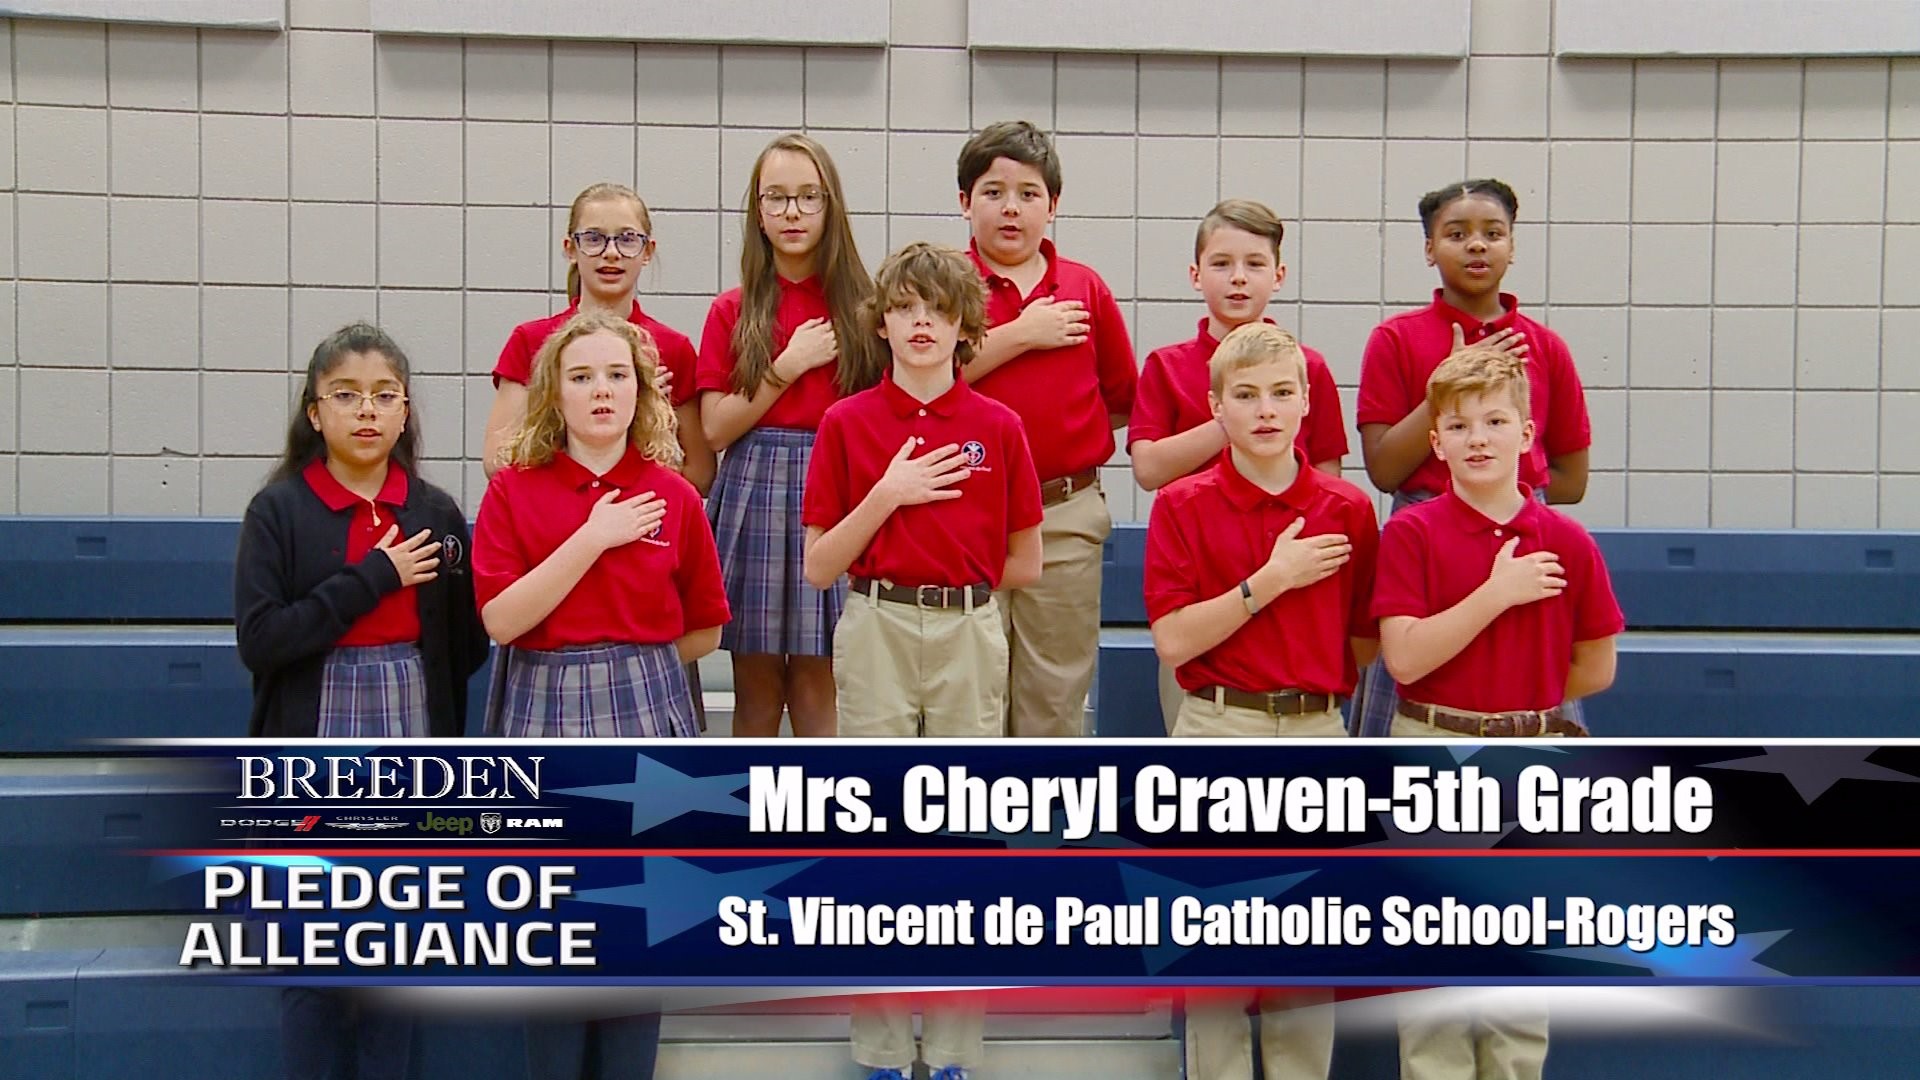 Mrs. Cheryl Craven  5th Grade St. Vincent de Paul Catholic School, Rogers